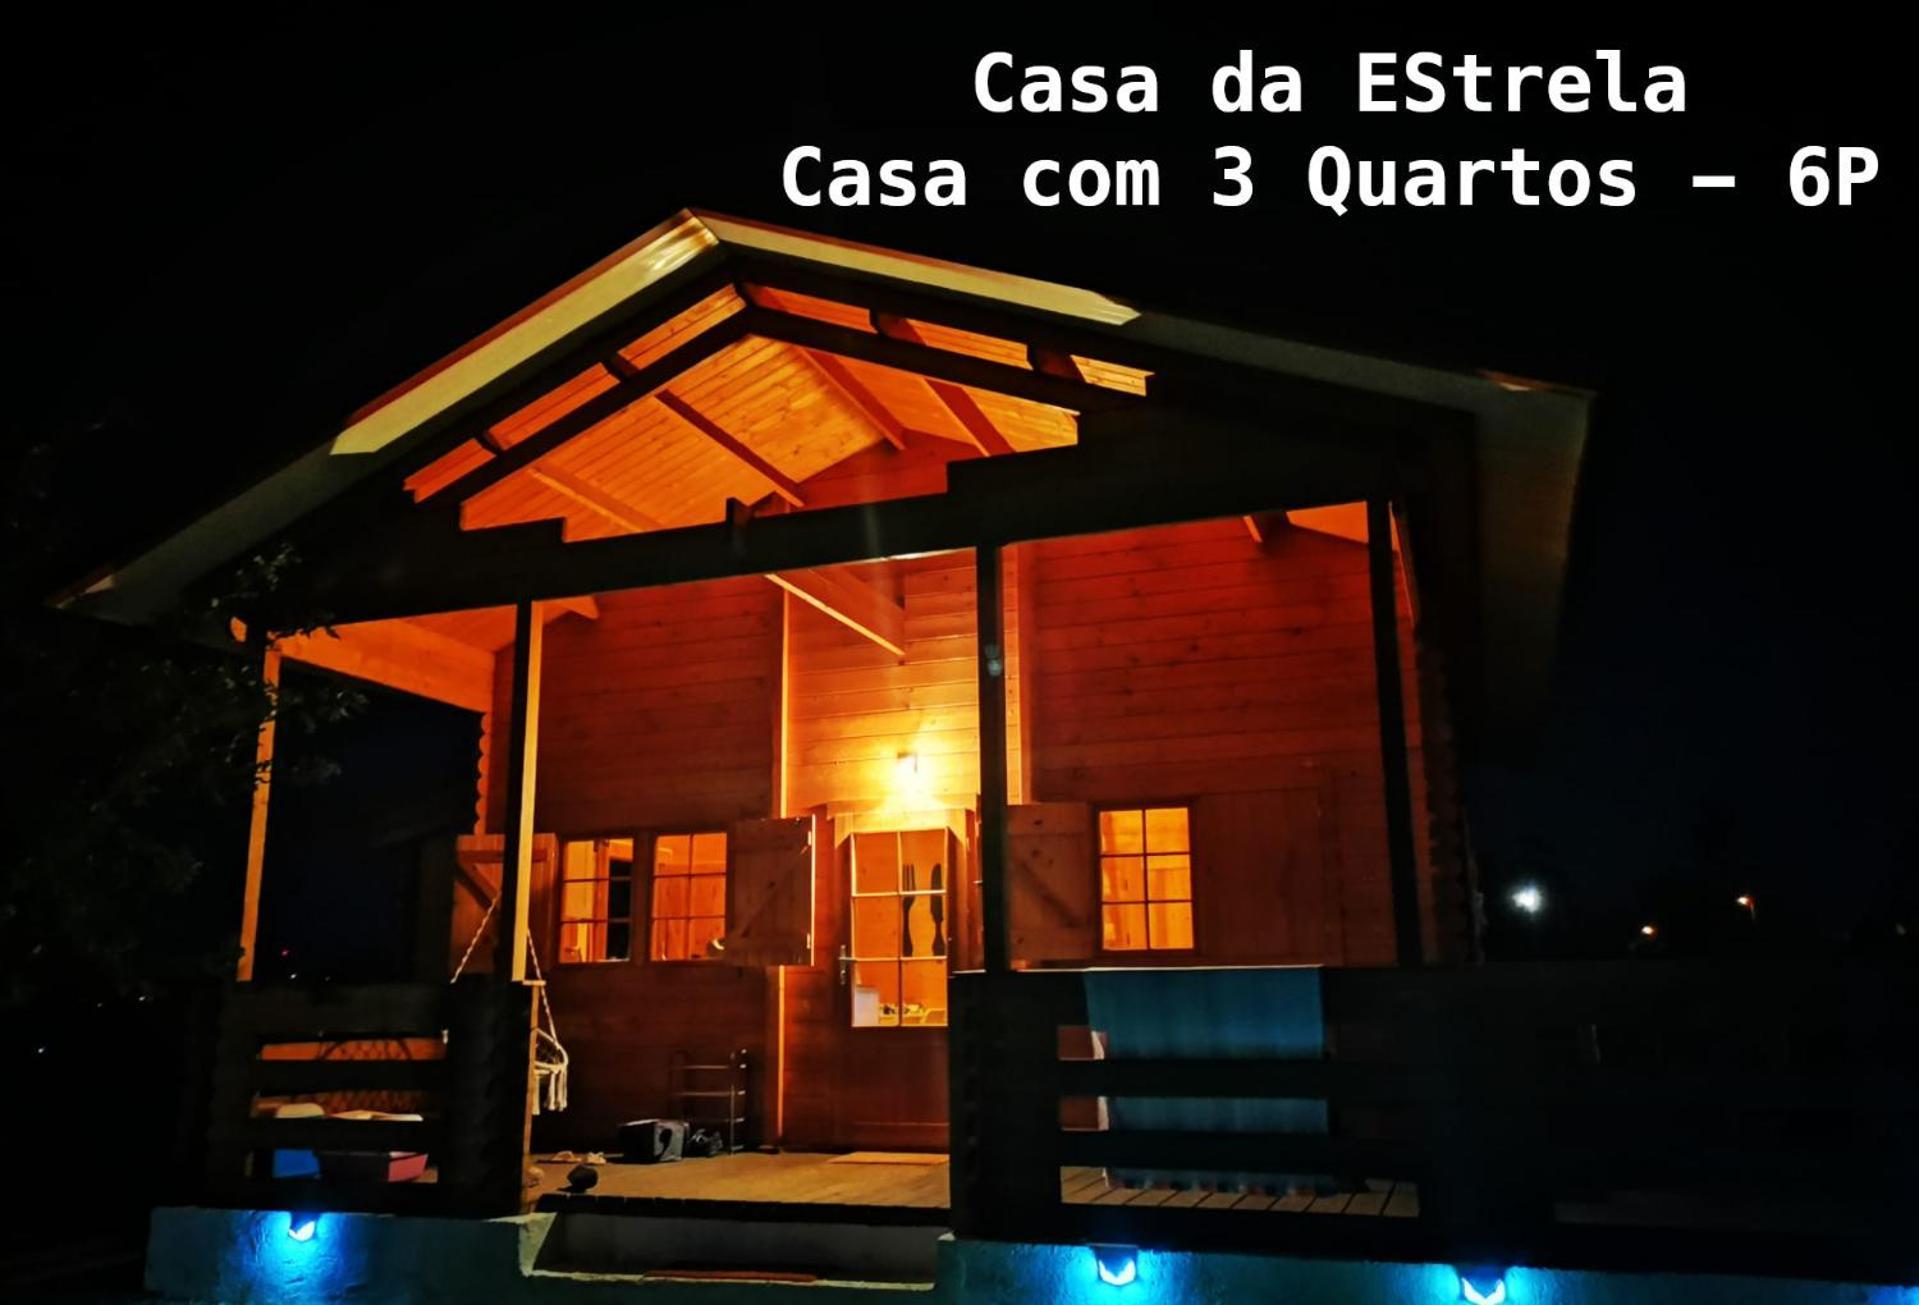 Vila Da Laje - Onde A Natureza O Envolve - Serra Da Estrela 奥利维拉多霍斯比托 外观 照片